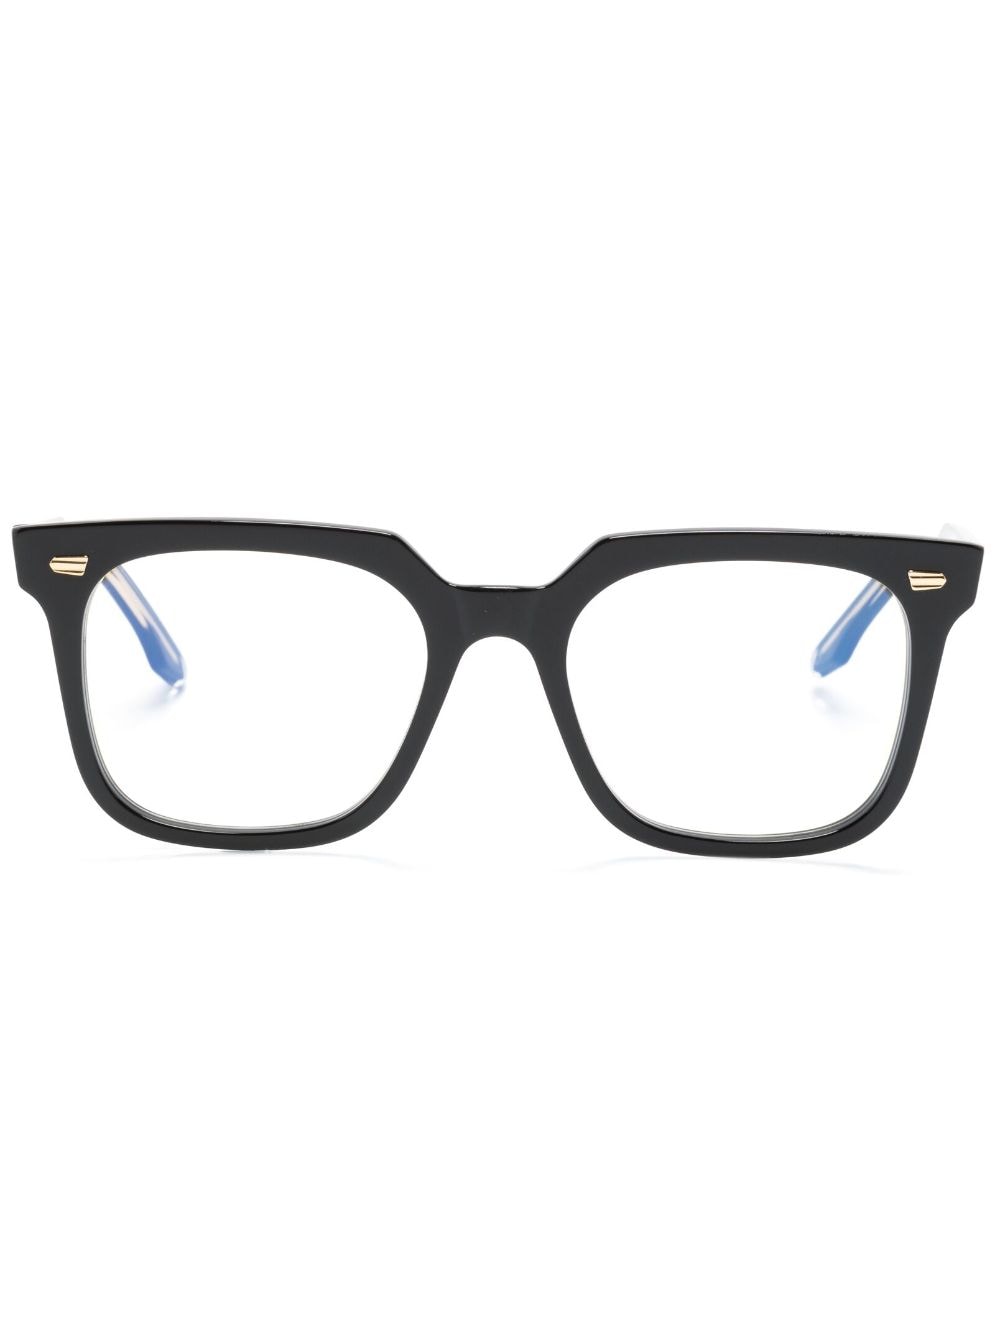 cutler & gross square-frame glasses - black